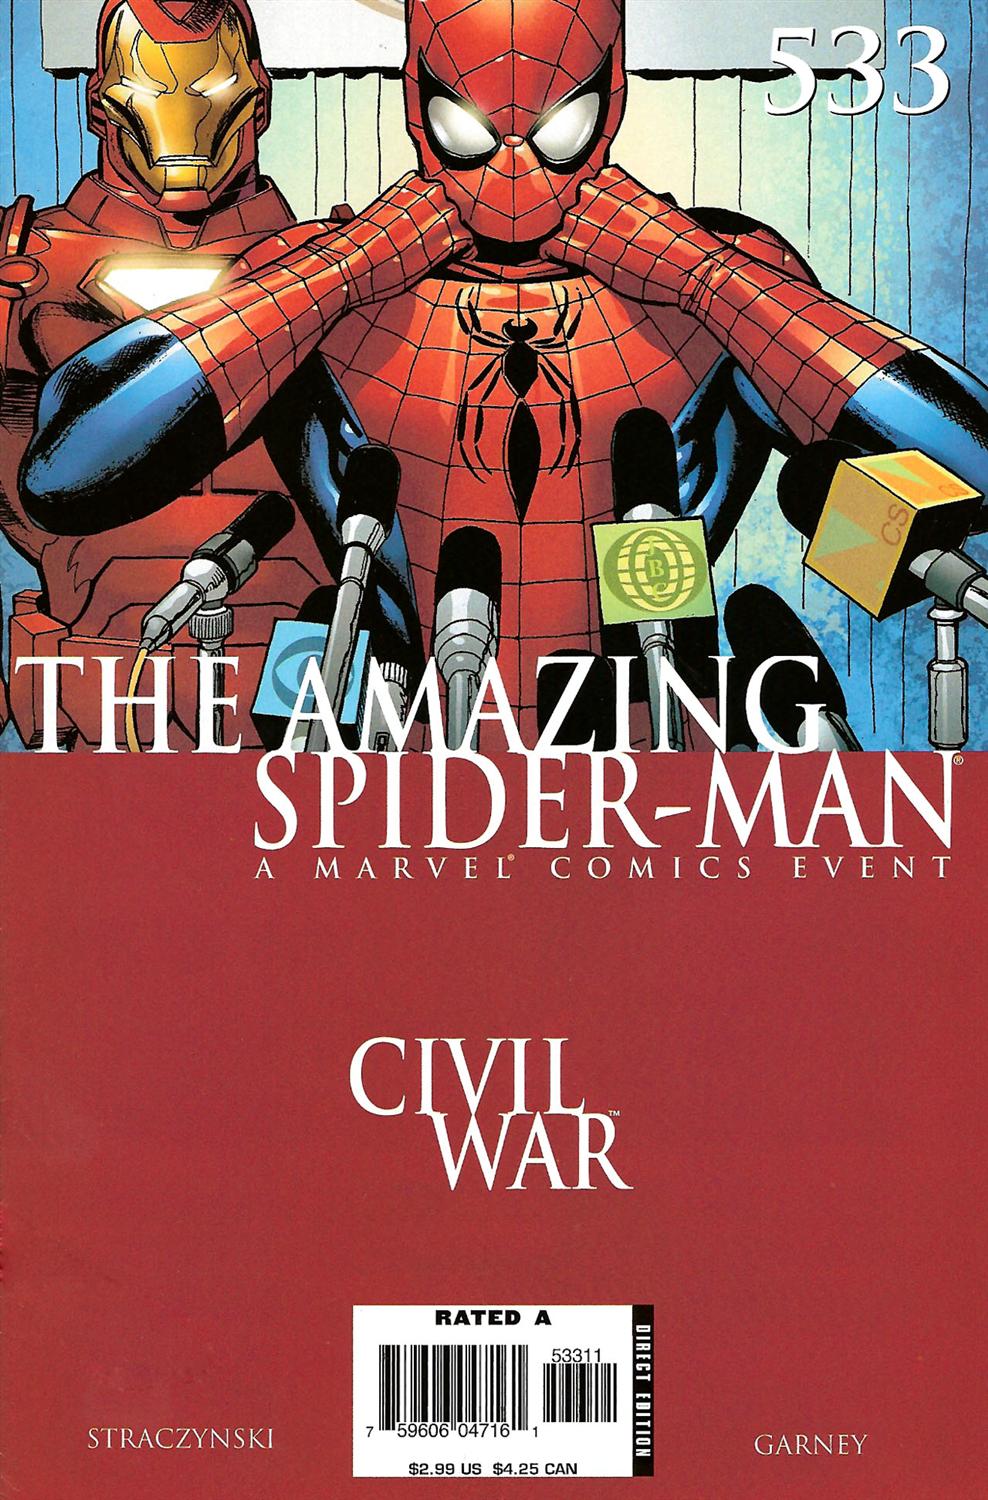 Amazing Spider-Man Vol. 1 #533